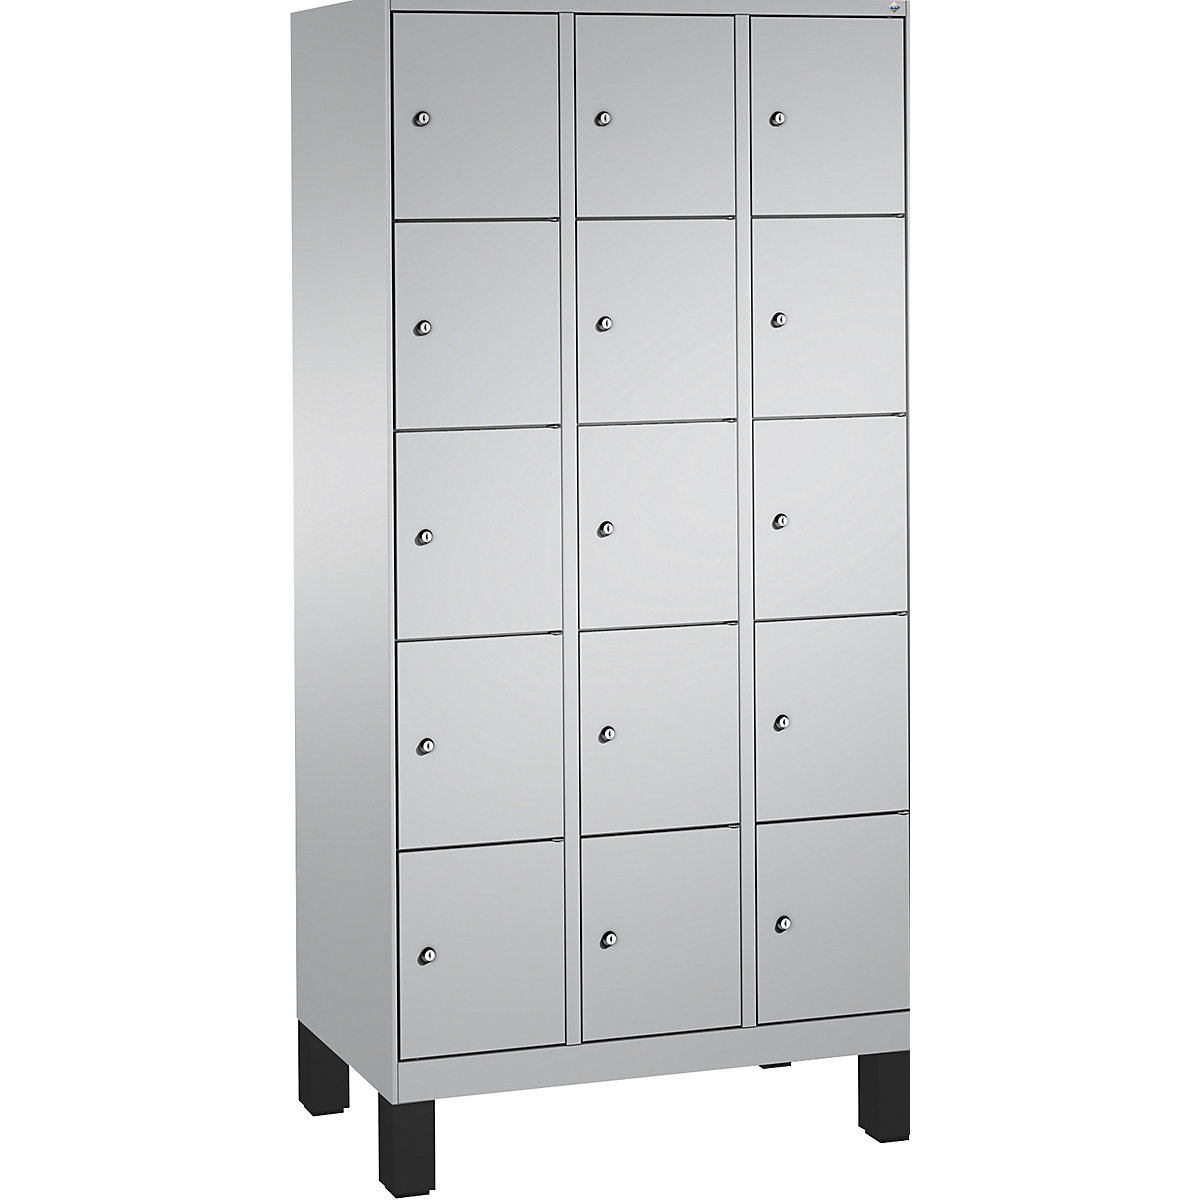 EVOLO locker unit, with feet – C+P, 3 compartments, 5 shelf compartments each, compartment width 300 mm, white aluminium / white aluminium-16